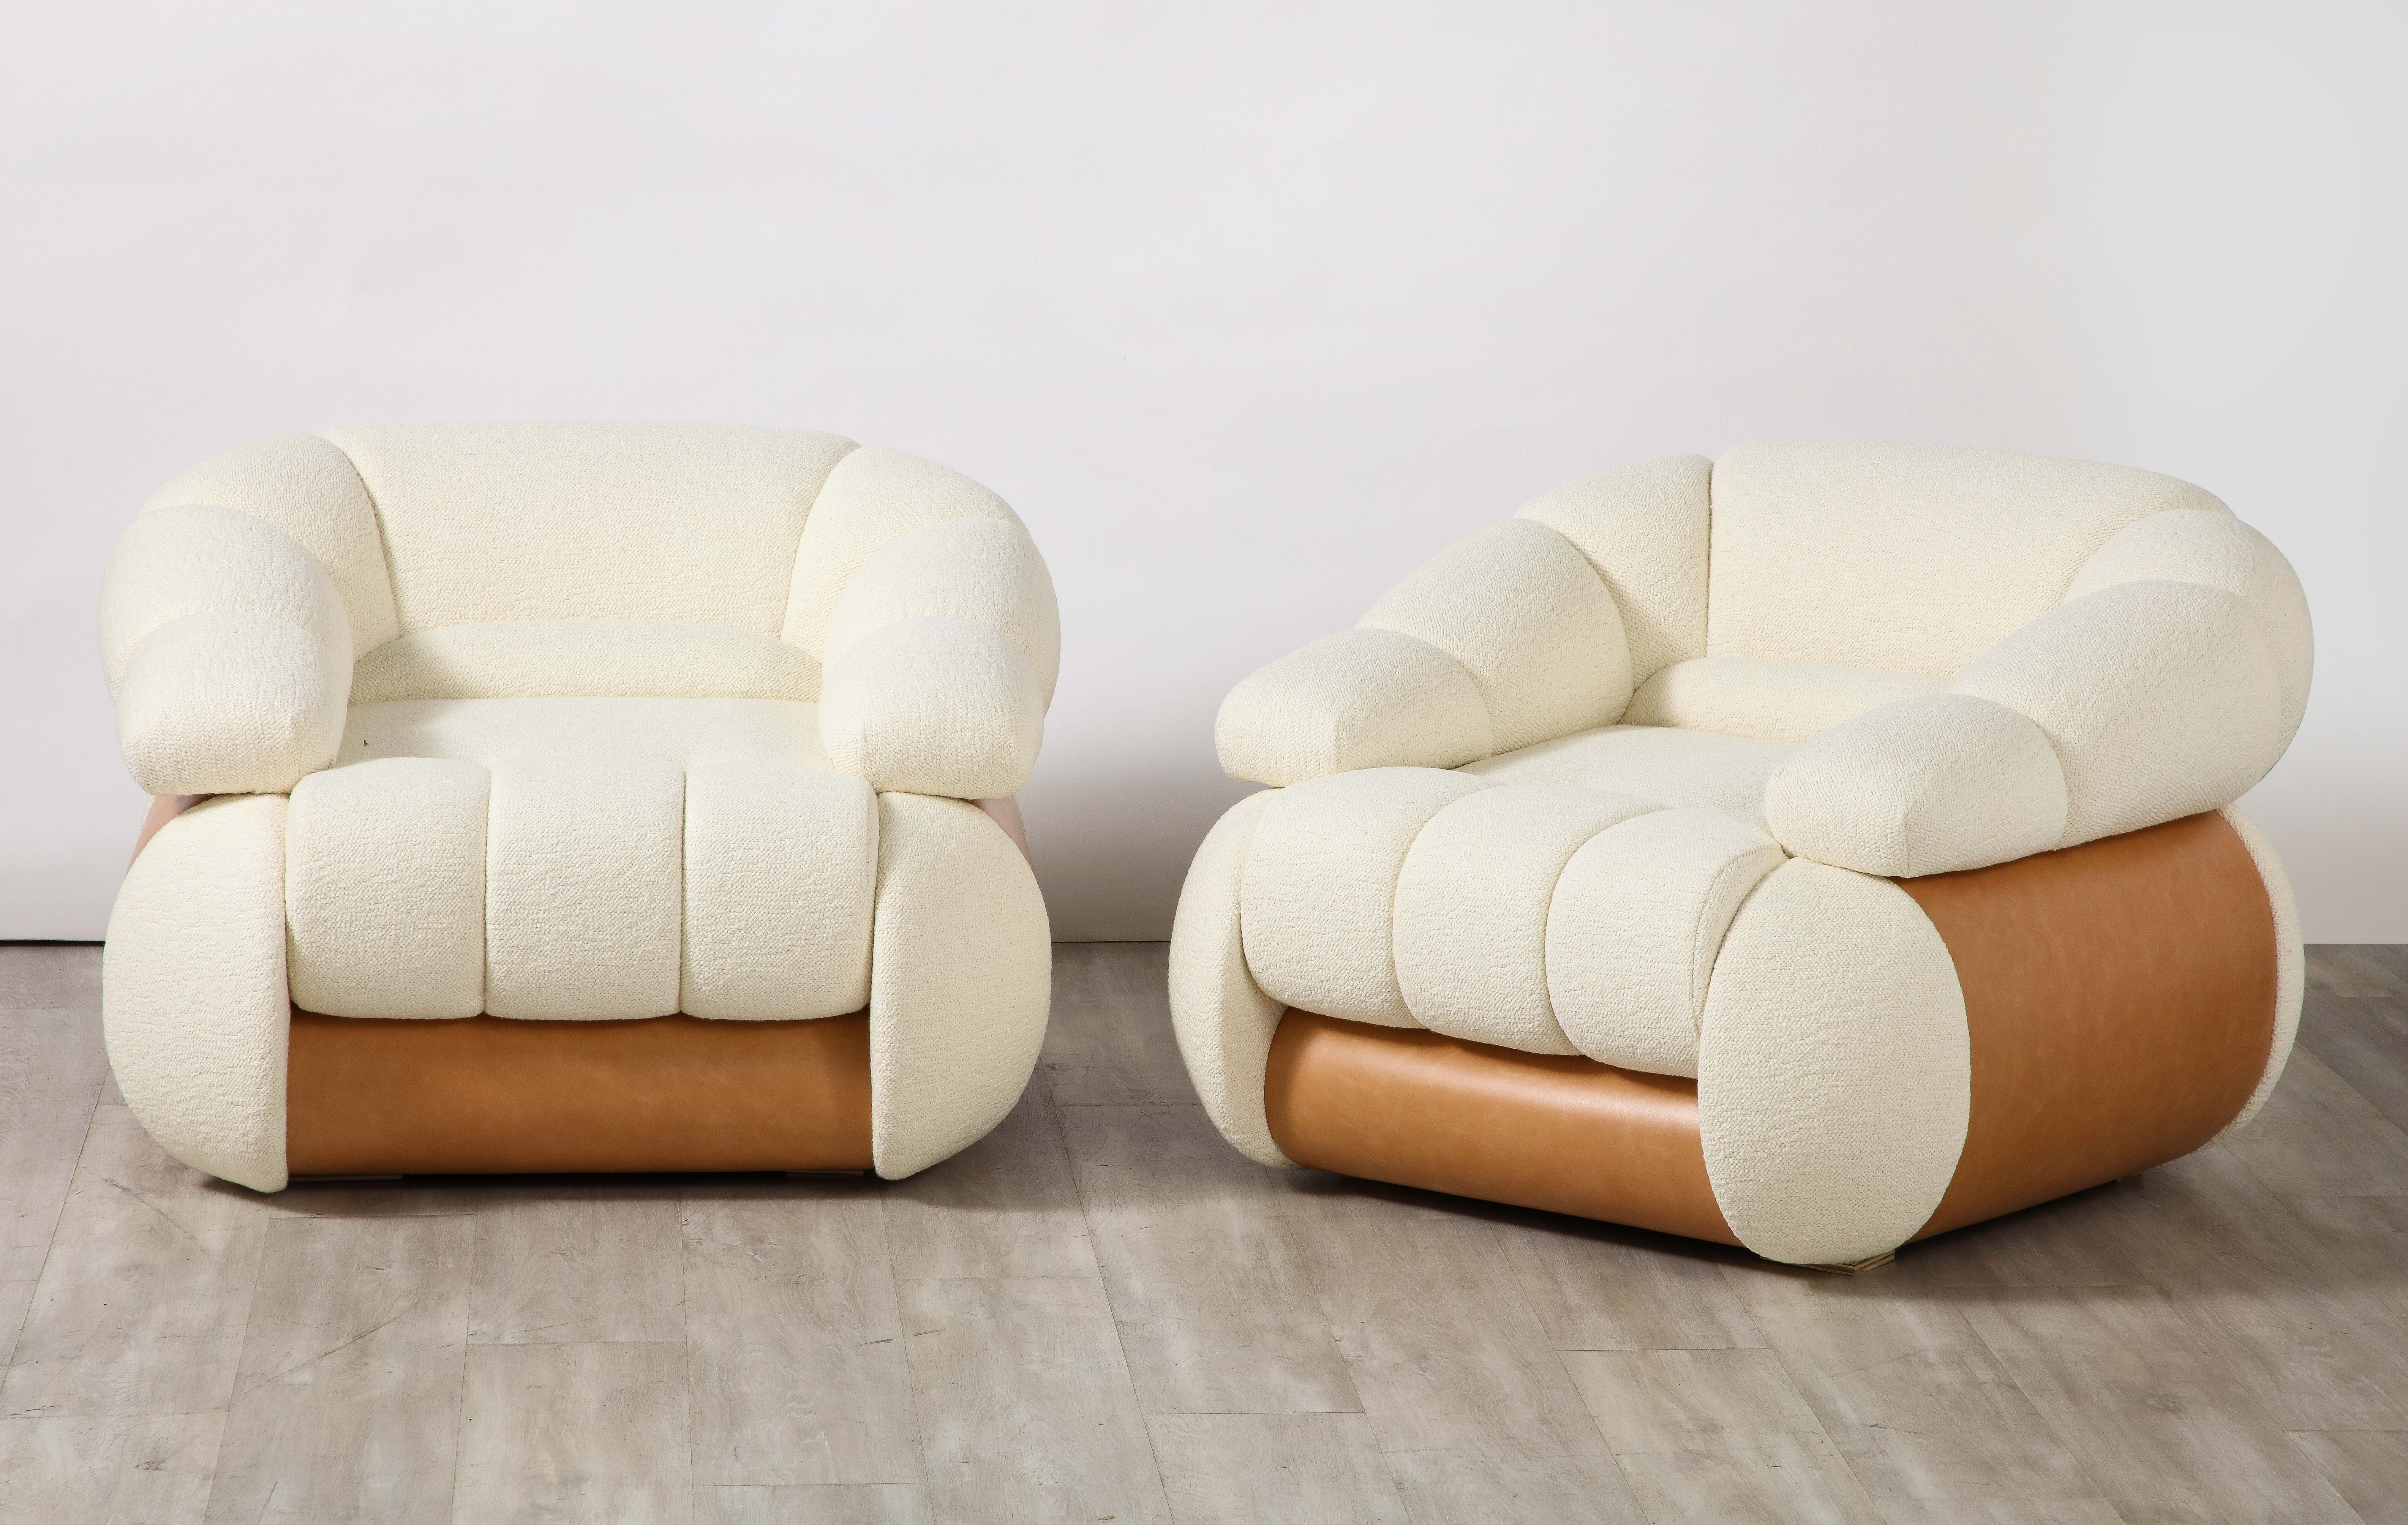 Paire de fauteuils de salon italiens Adriano Piazzesi des années 1970 ; l'ensemble est recouvert de cannelures et de capitons, les côtés et le dossier sont incurvés et recouverts d'un cuir italien brun chaud. Les chaises sont construites à partir de